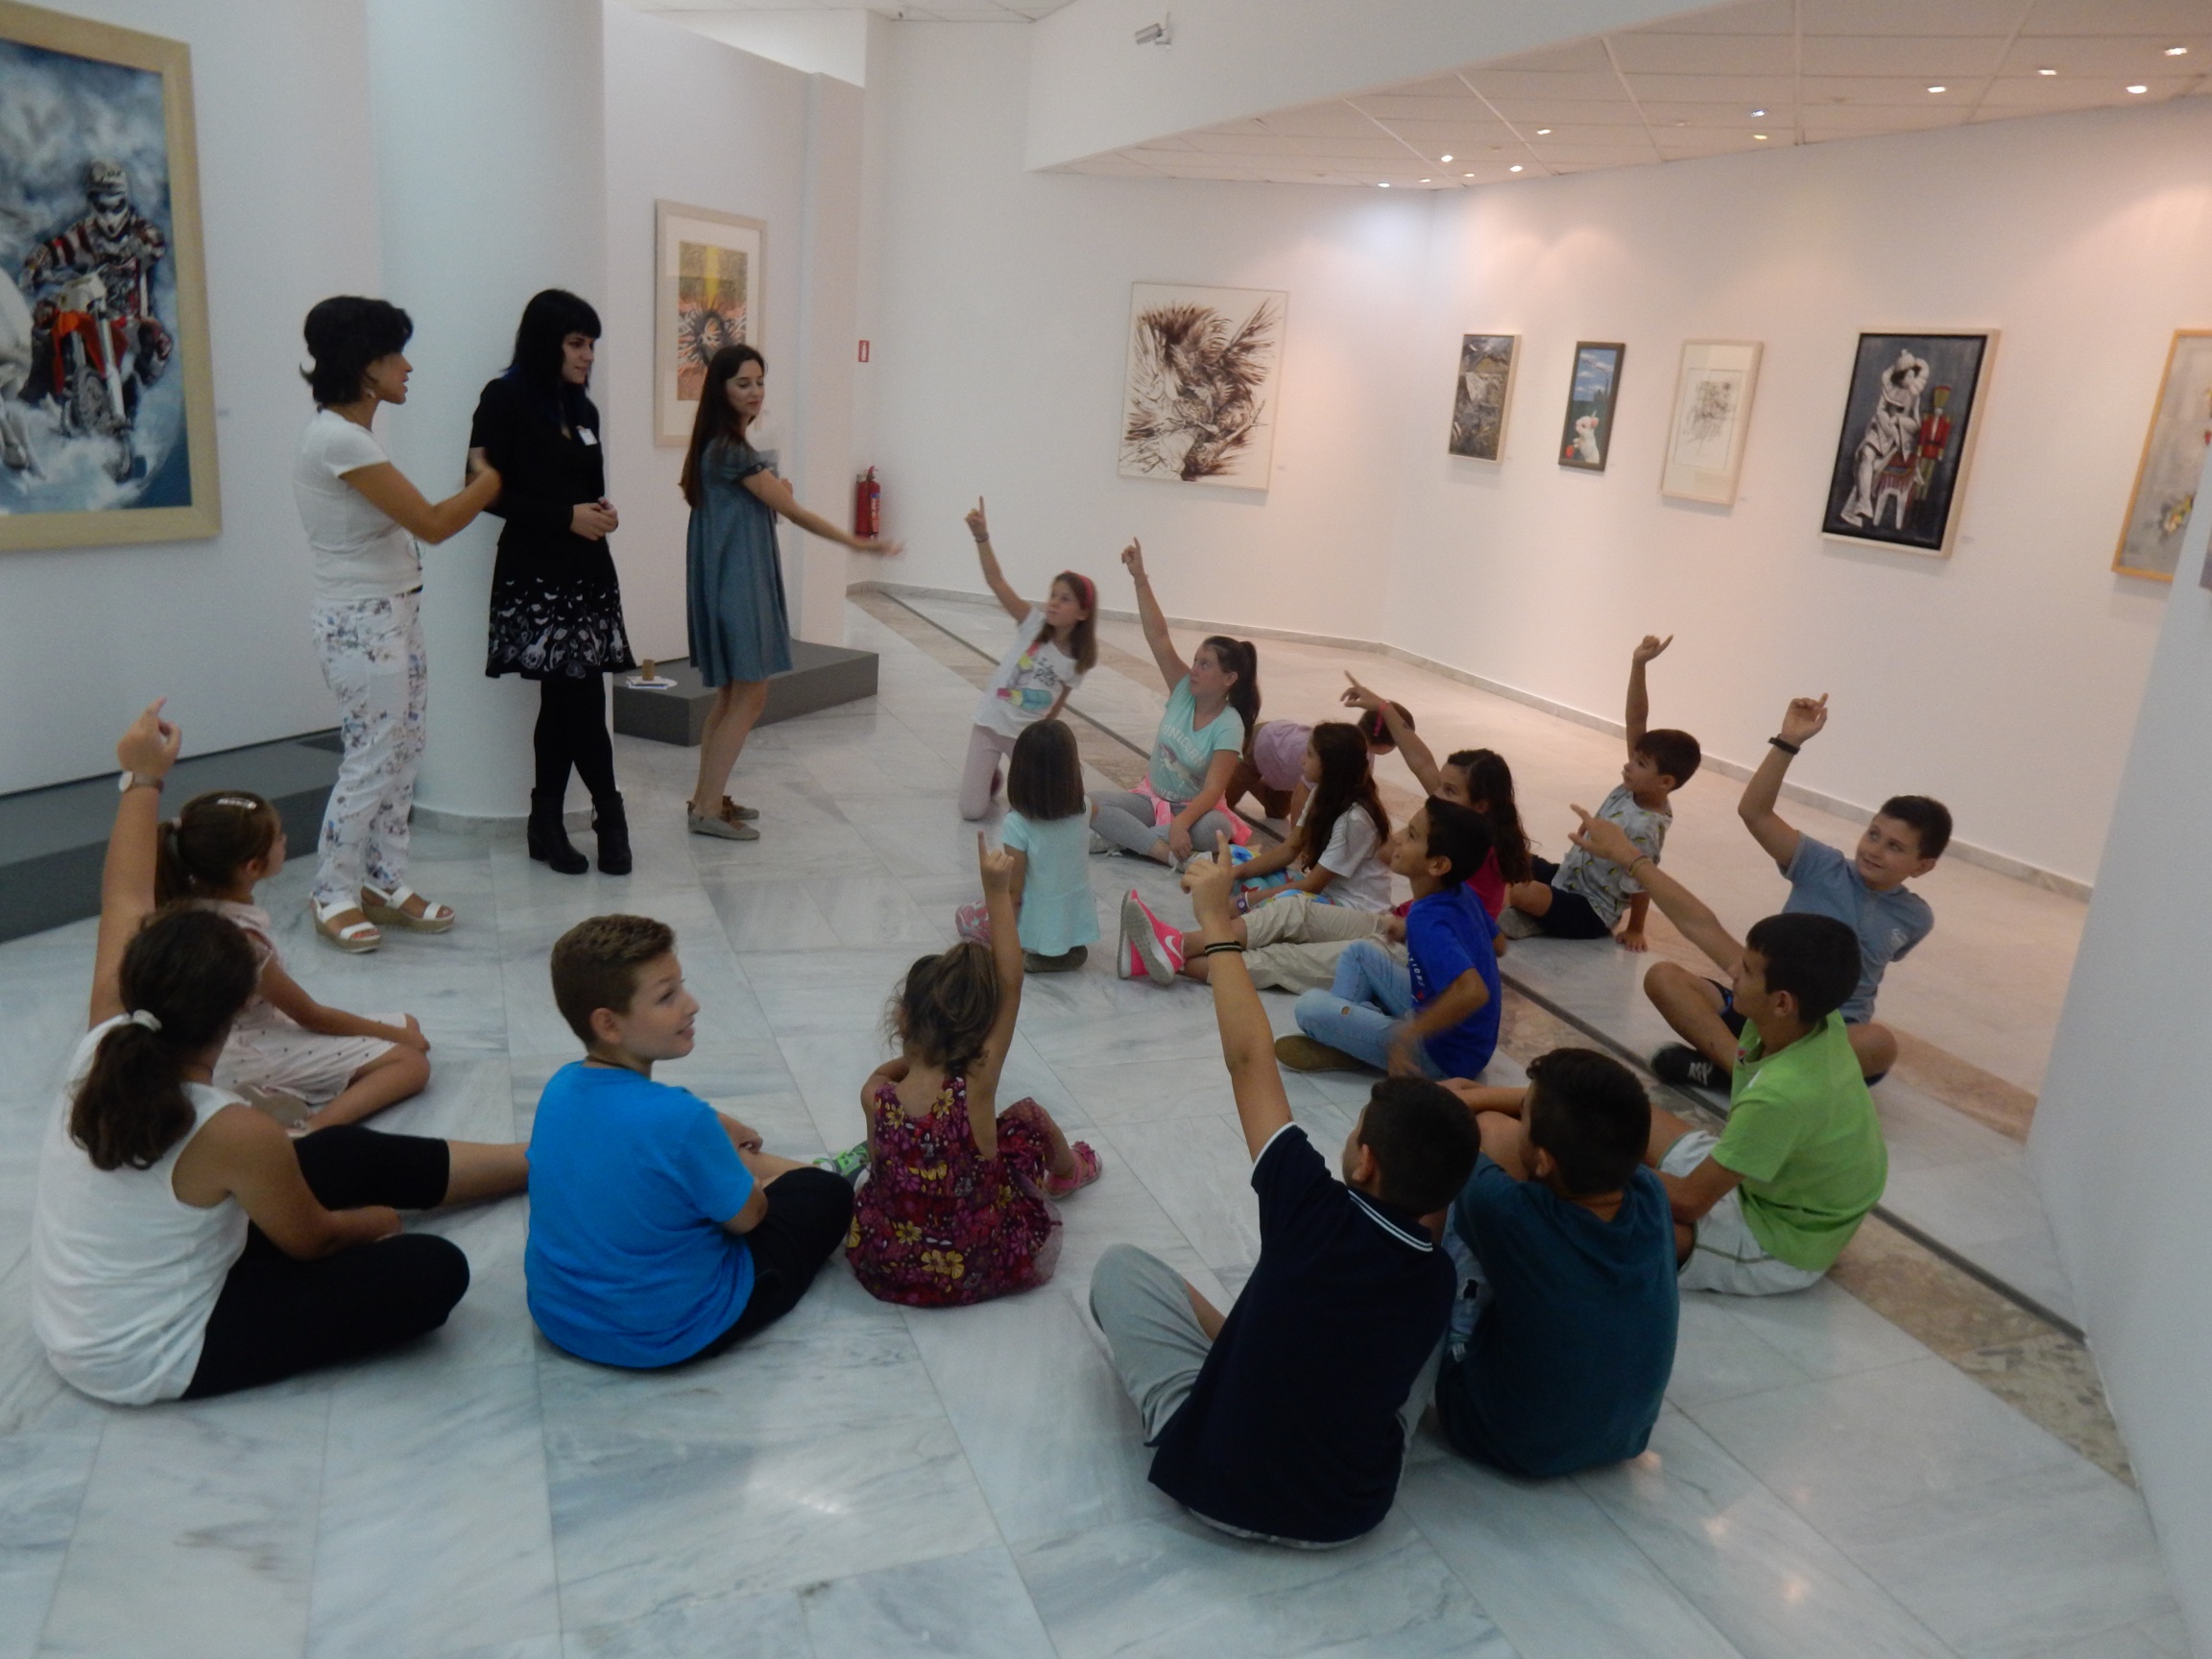 Ξεκίνησαν τα εκπαιδευτικά προγράμματα για τους μικρούς επισκέπτες του μουσείου!